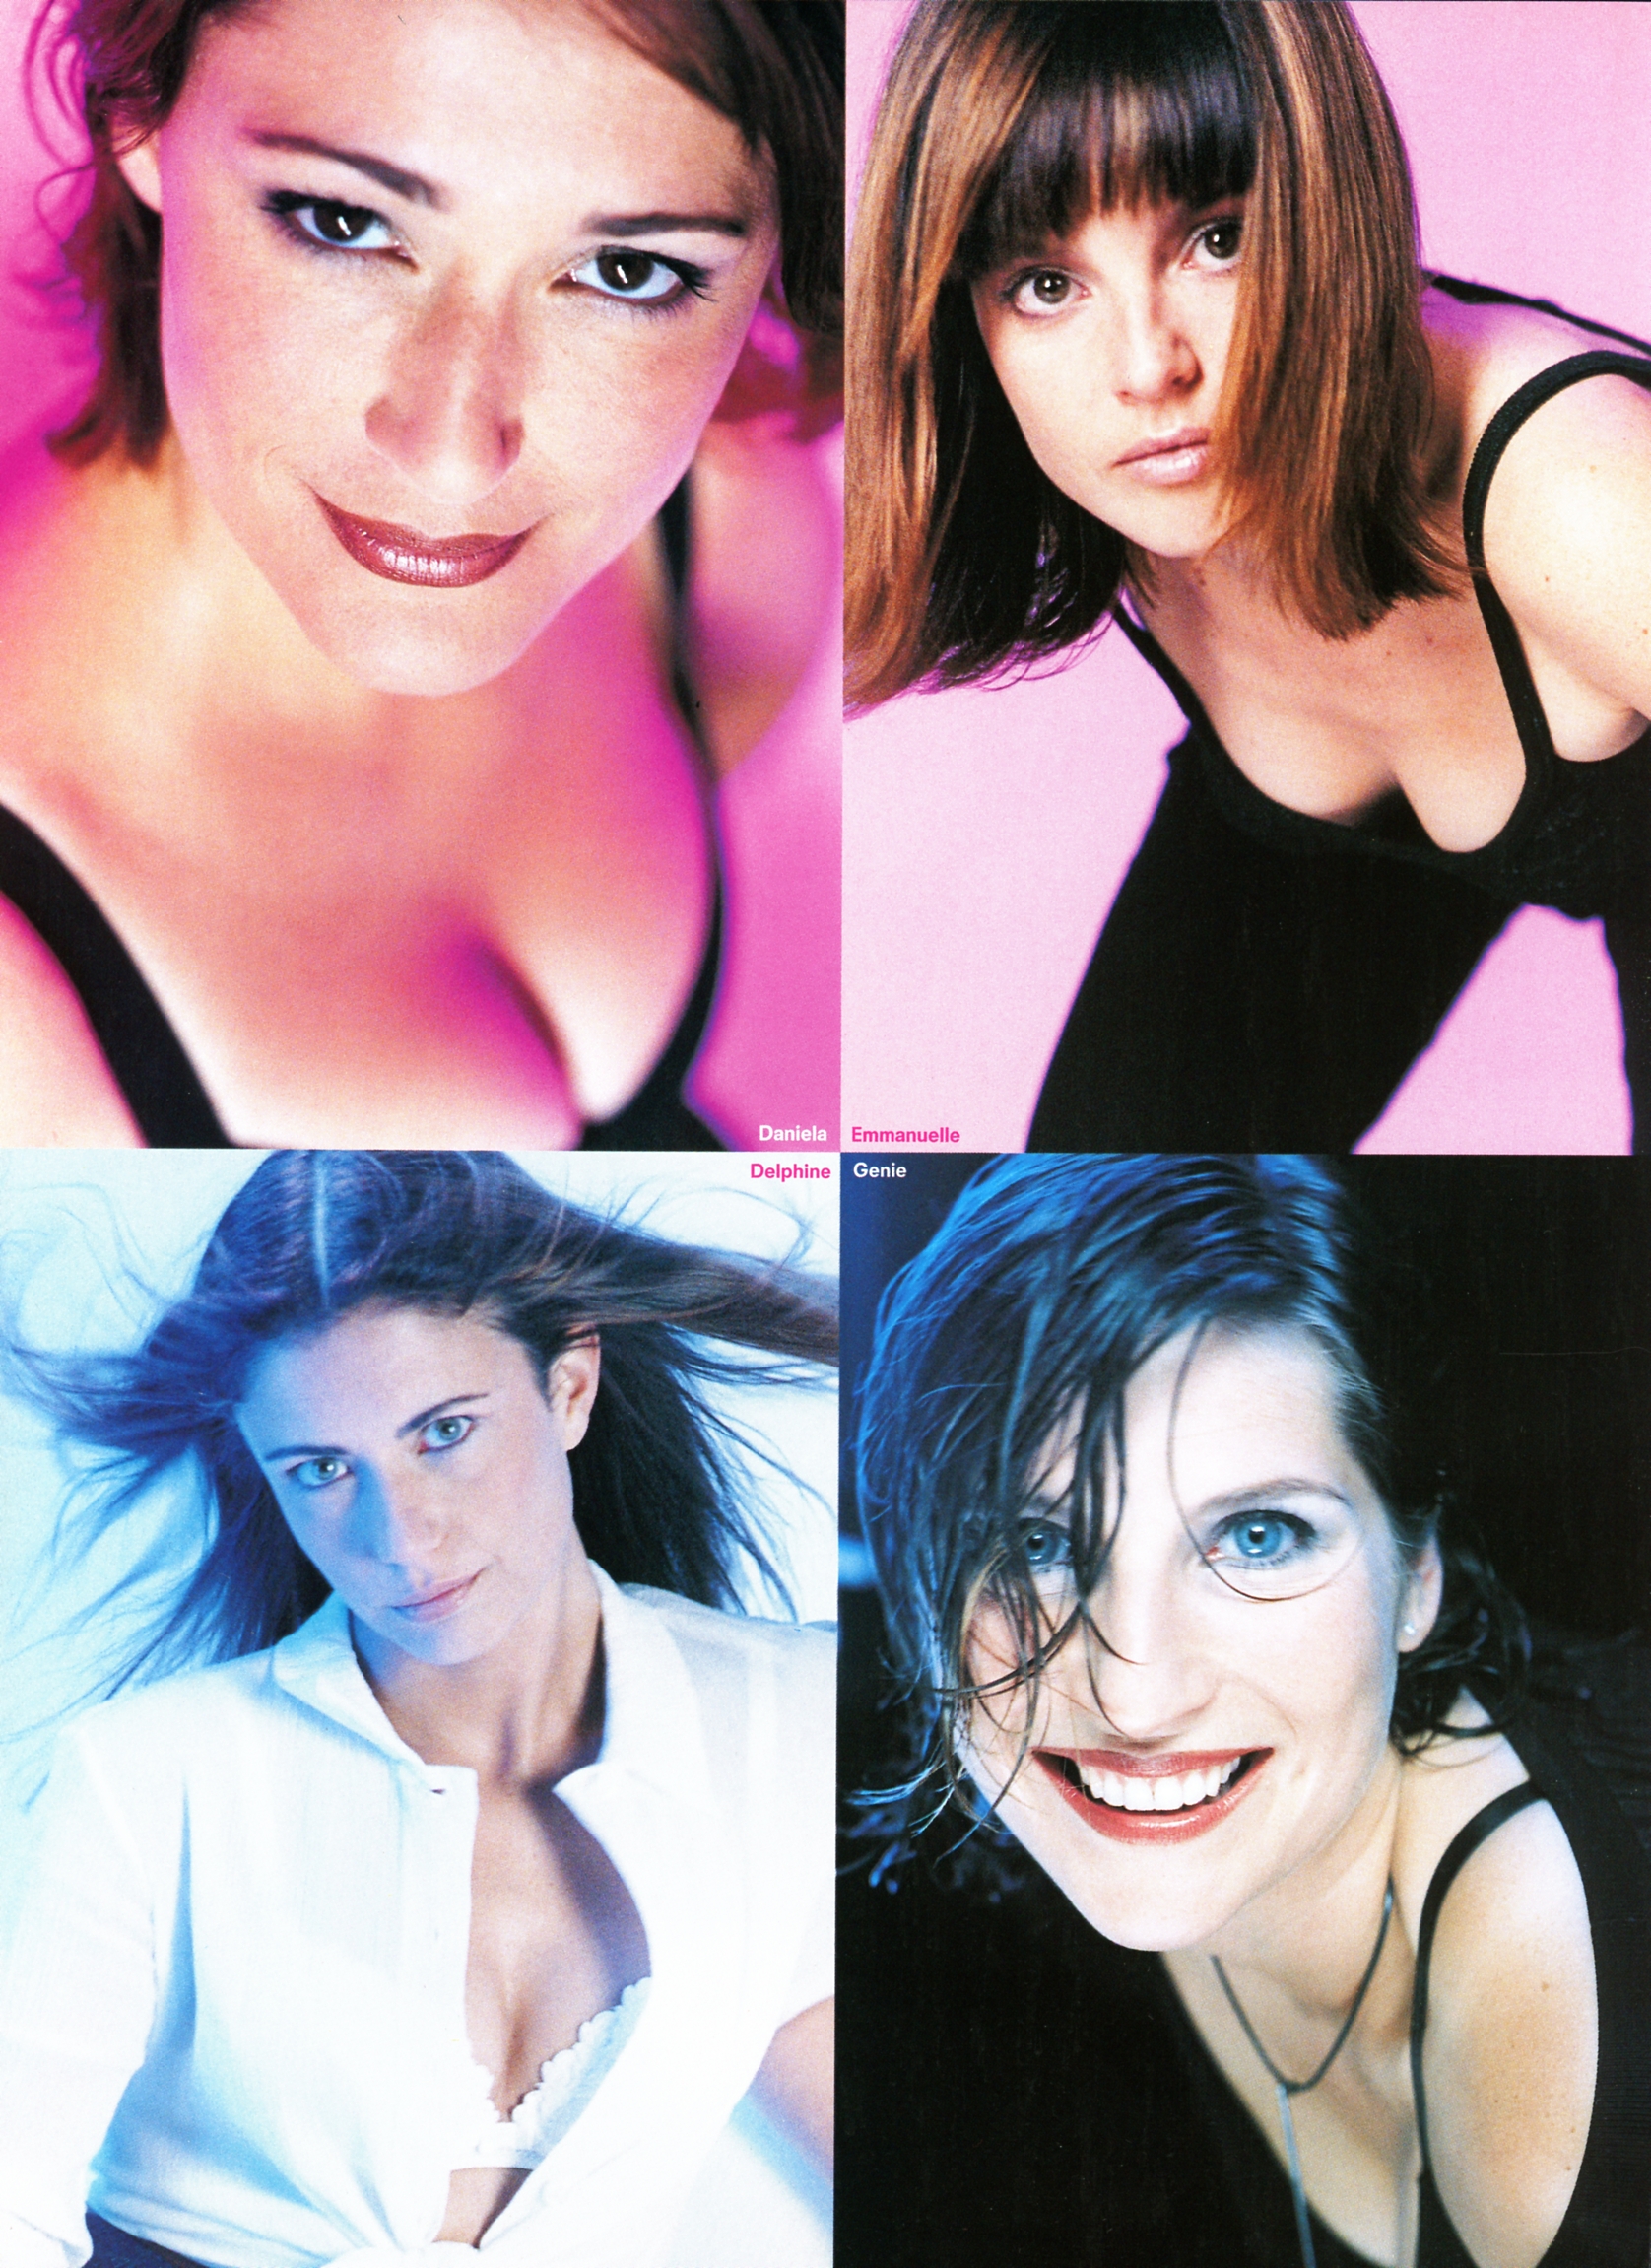 FHM French 1999 N002 = P15 Daniella Emmanuelle Delphine Genie.jpg